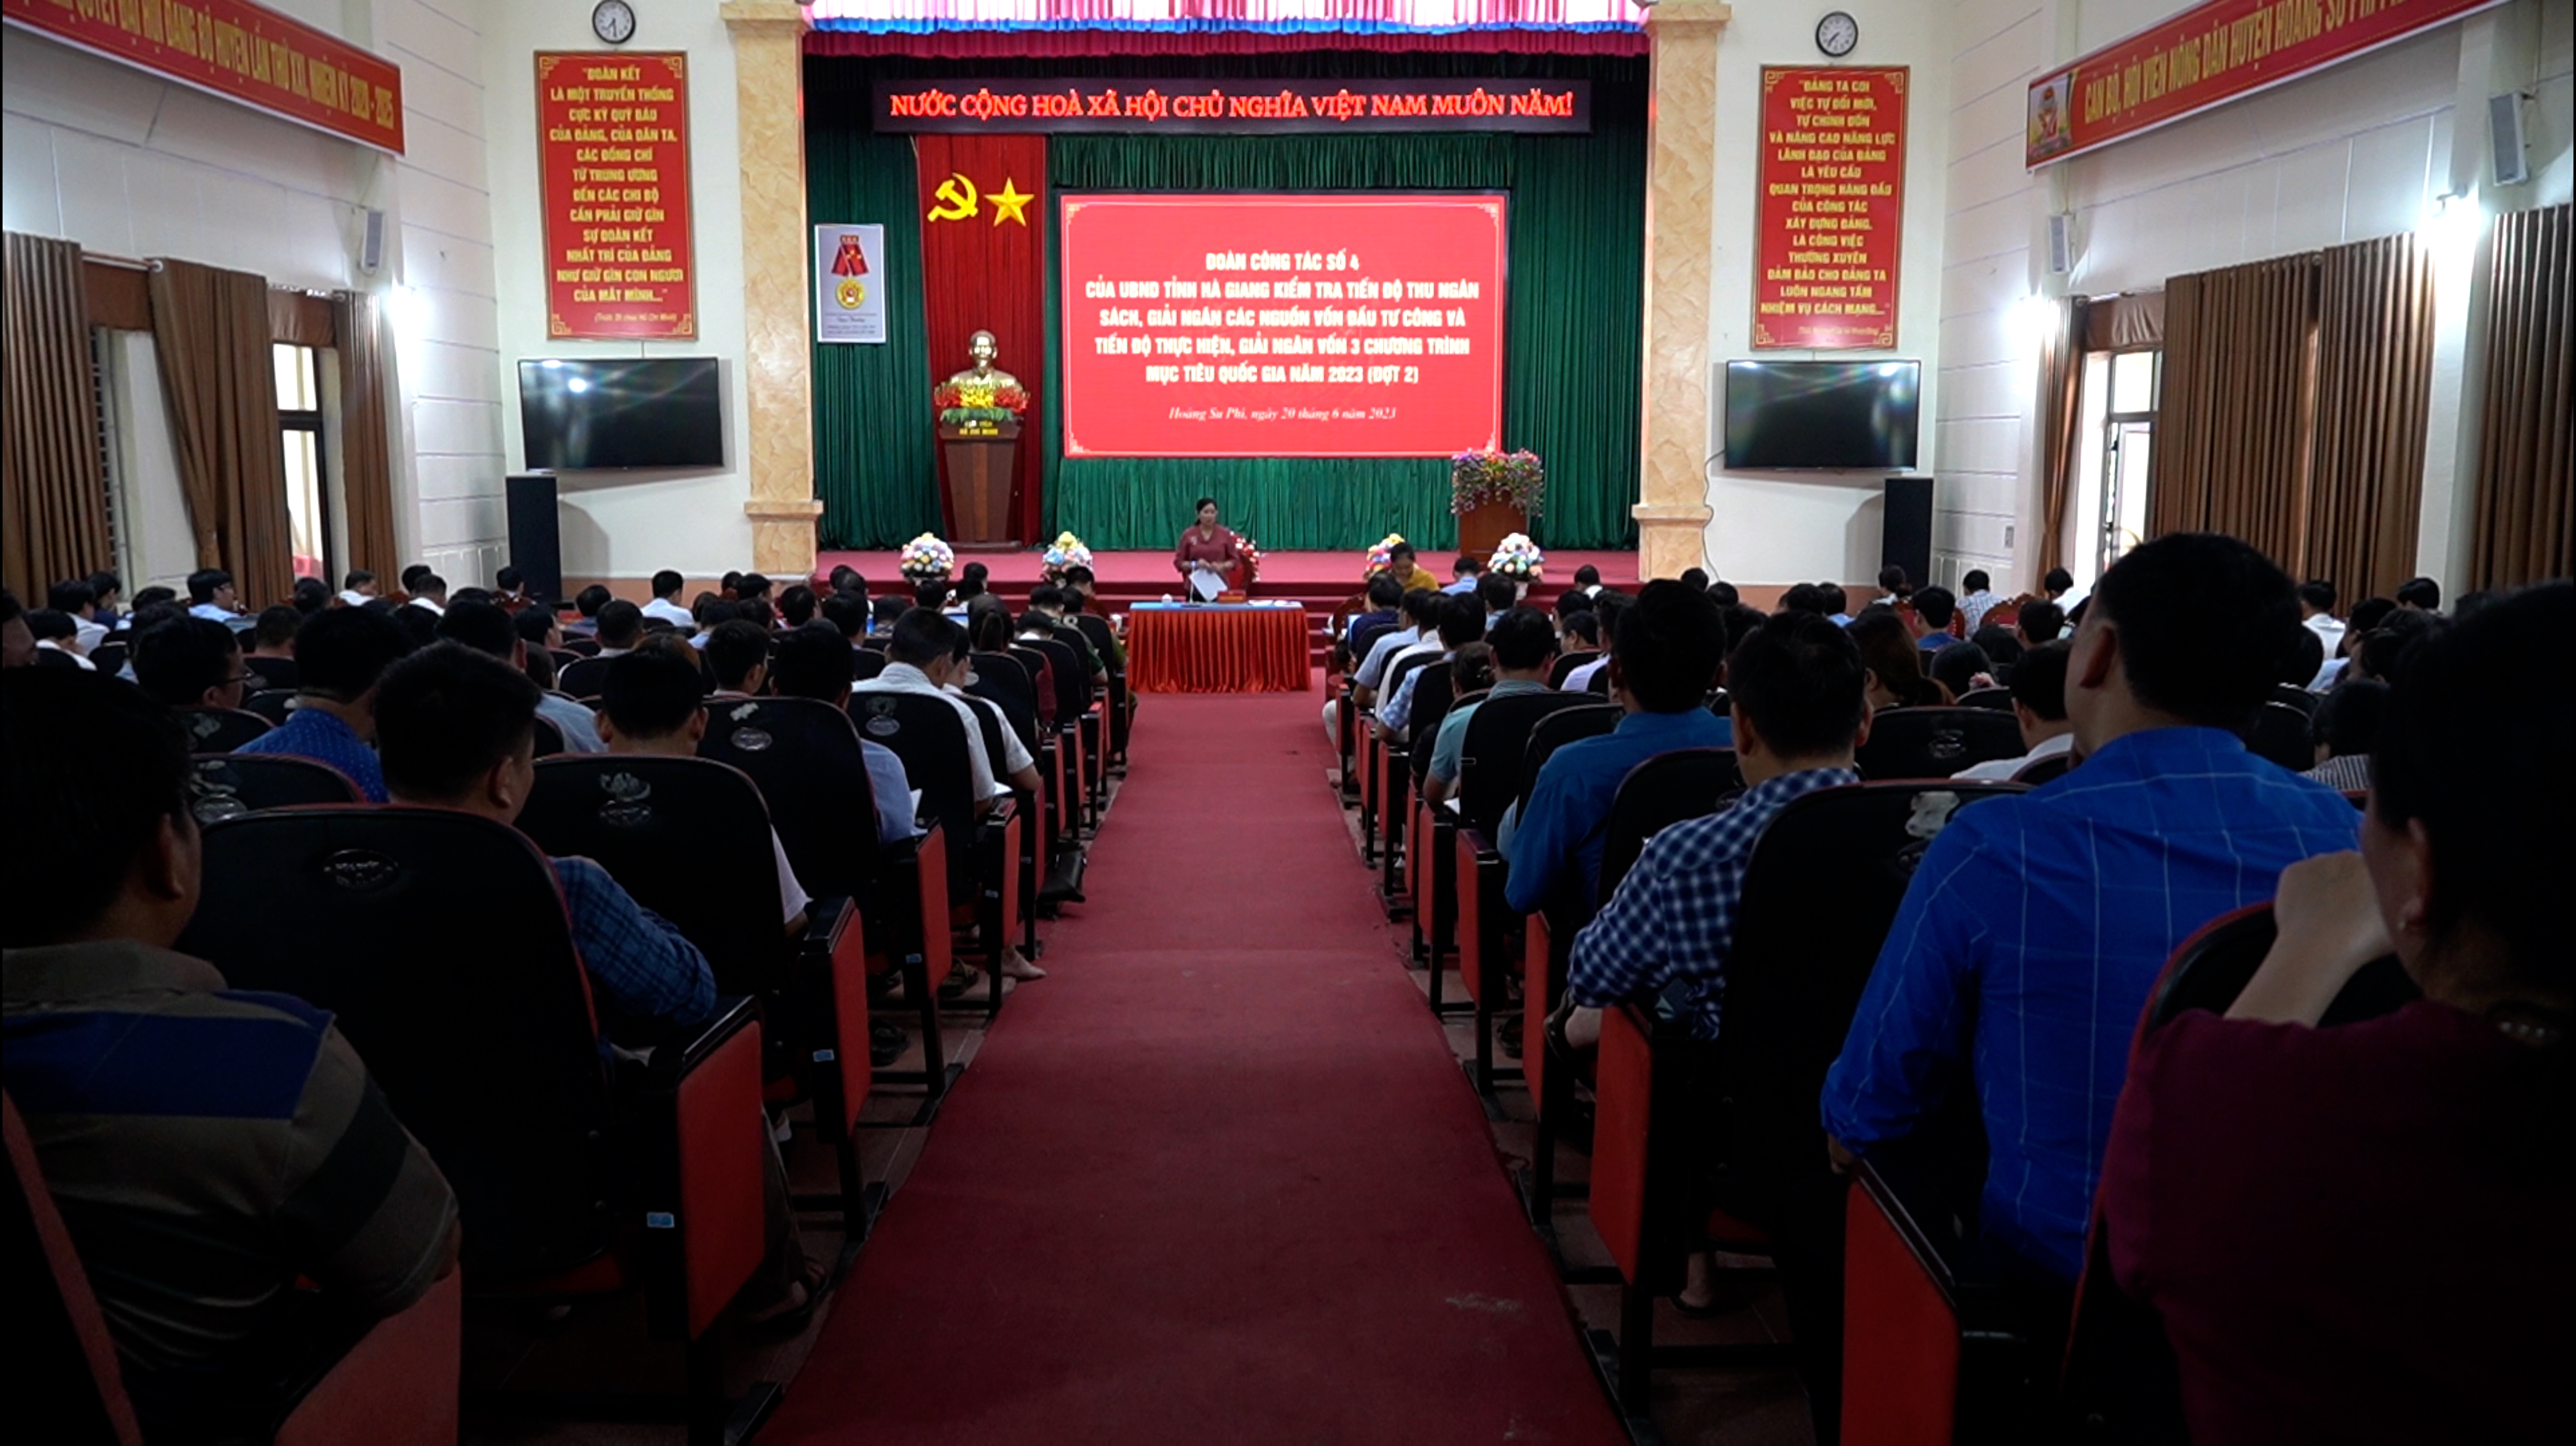 Phó chủ tịch UBND tỉnh Hà Thị Minh Hạnh kiểm tra tiến độ thu ngân sách nhà nước và tiến độ giải ngân tại huyện Hoàng Su Phì